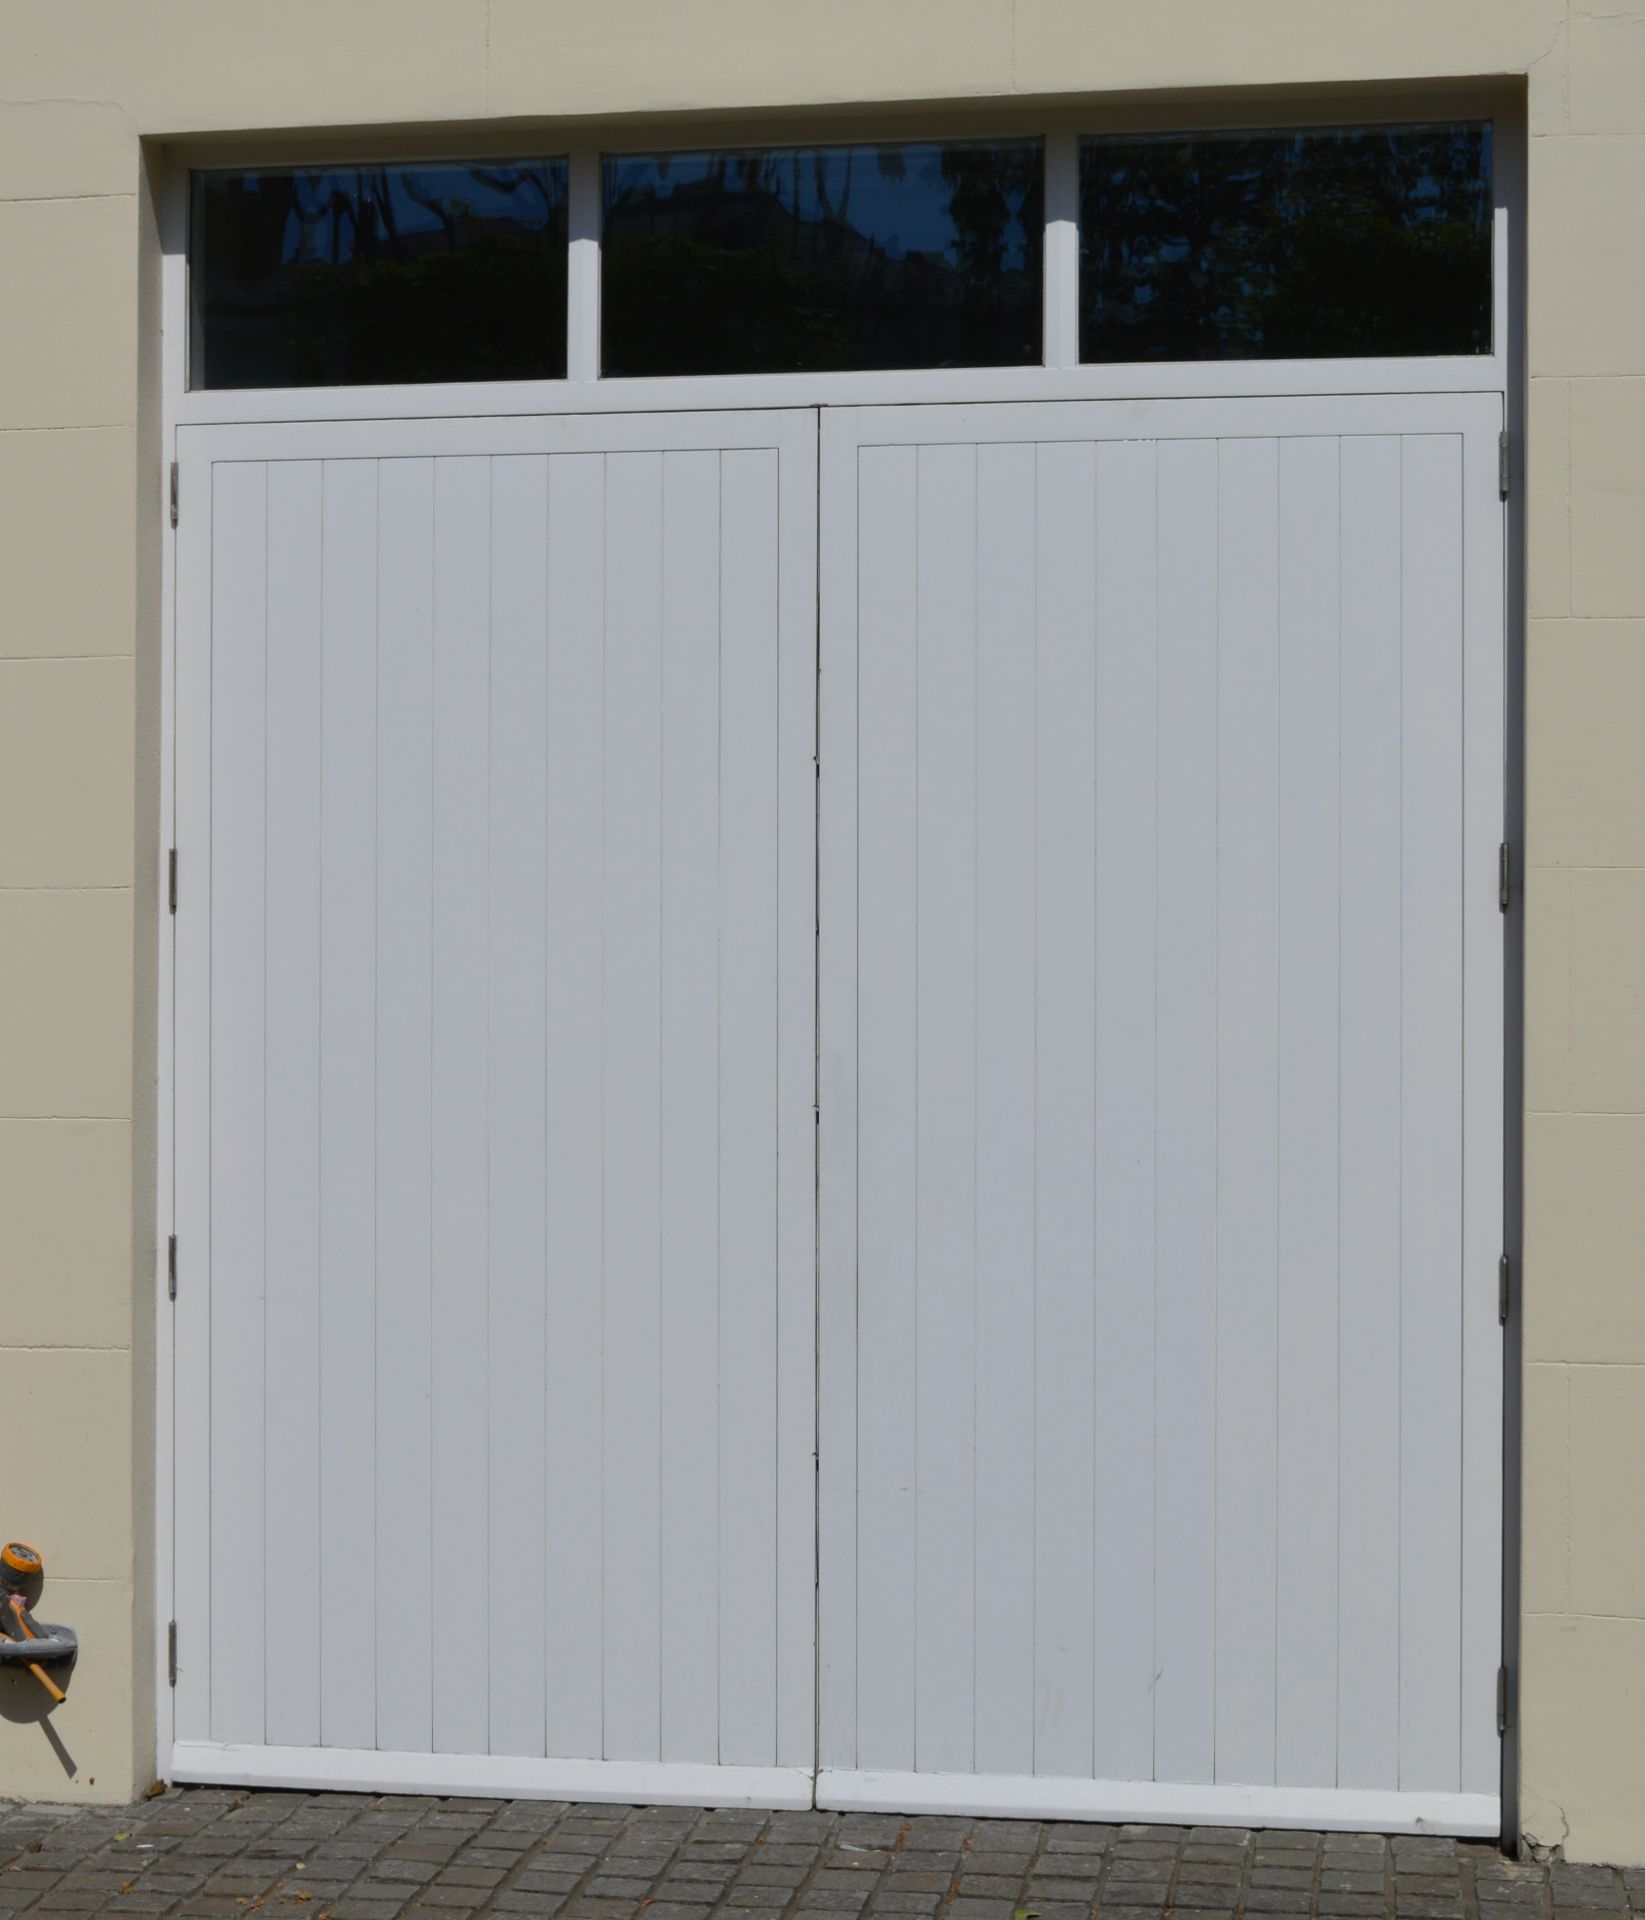 1 x Set of Wooden Garage Doors With Windowed Frame - Ref 117 - Includes Door Lock and Hinges - - Image 3 of 10